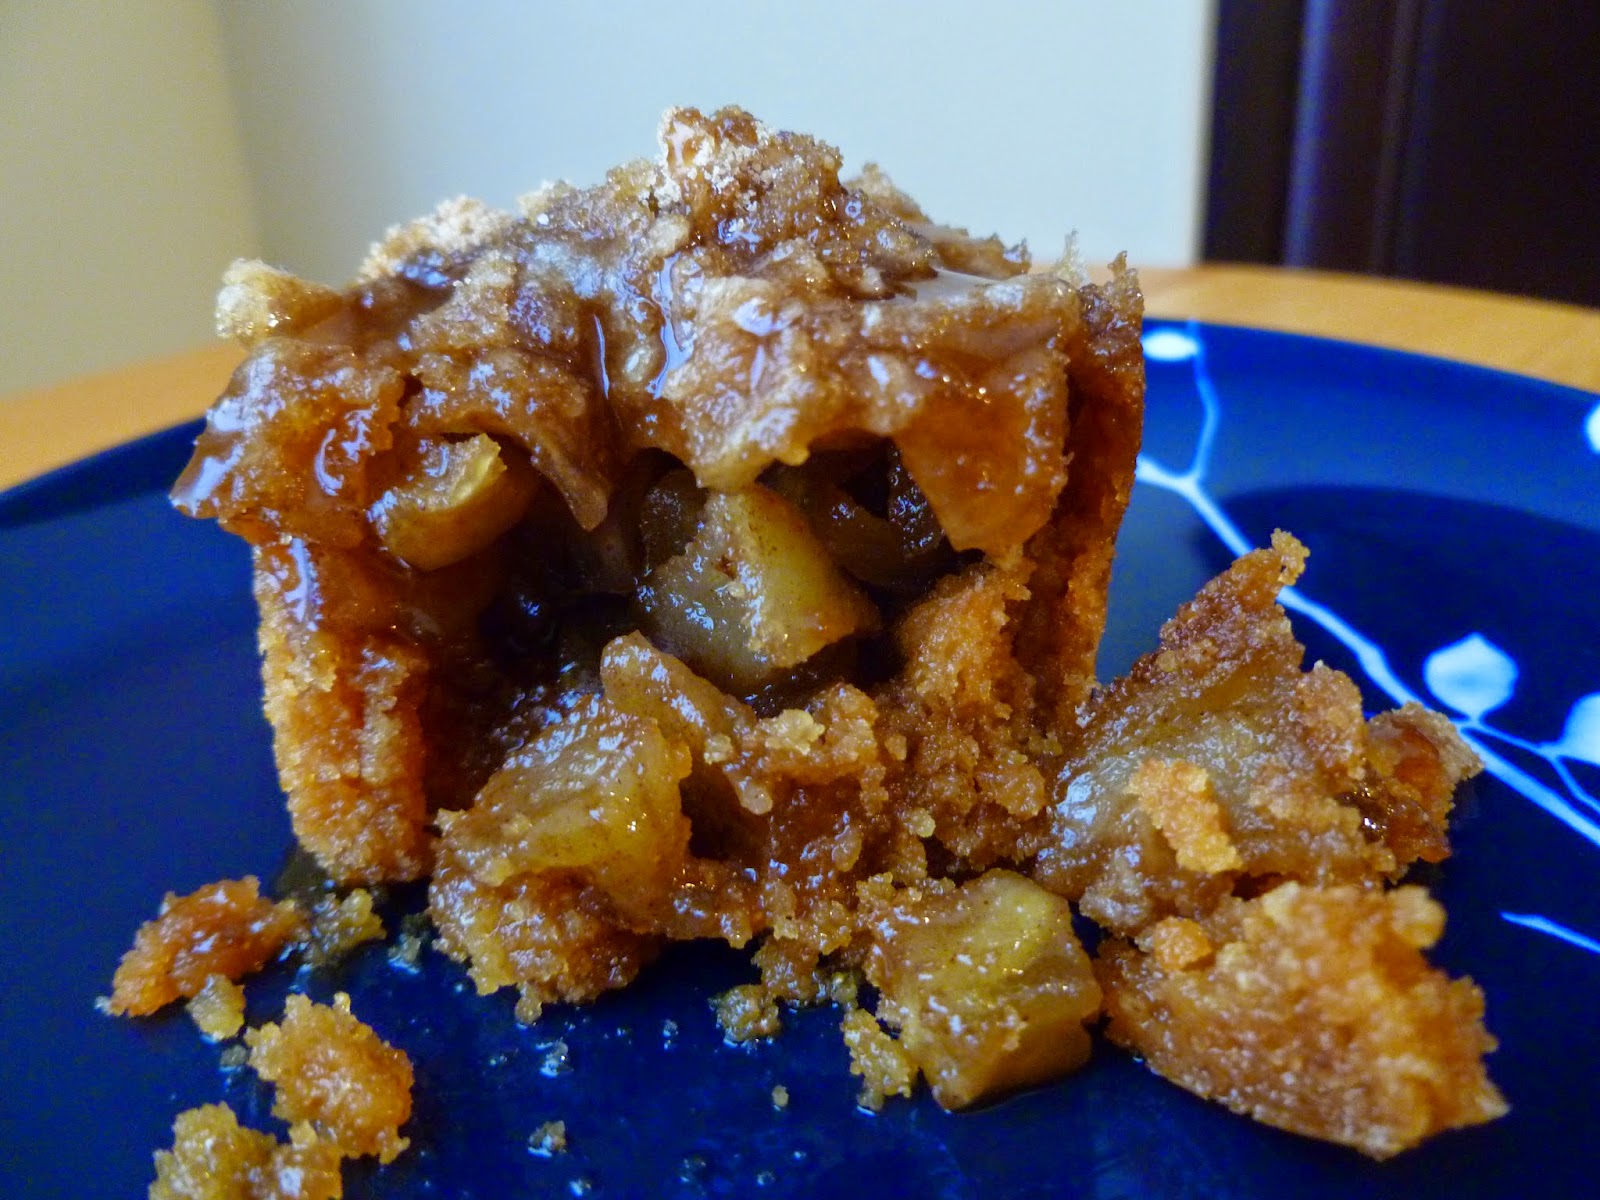 The Pastry Chef's Baking: Caramel Apple Crisp Bites